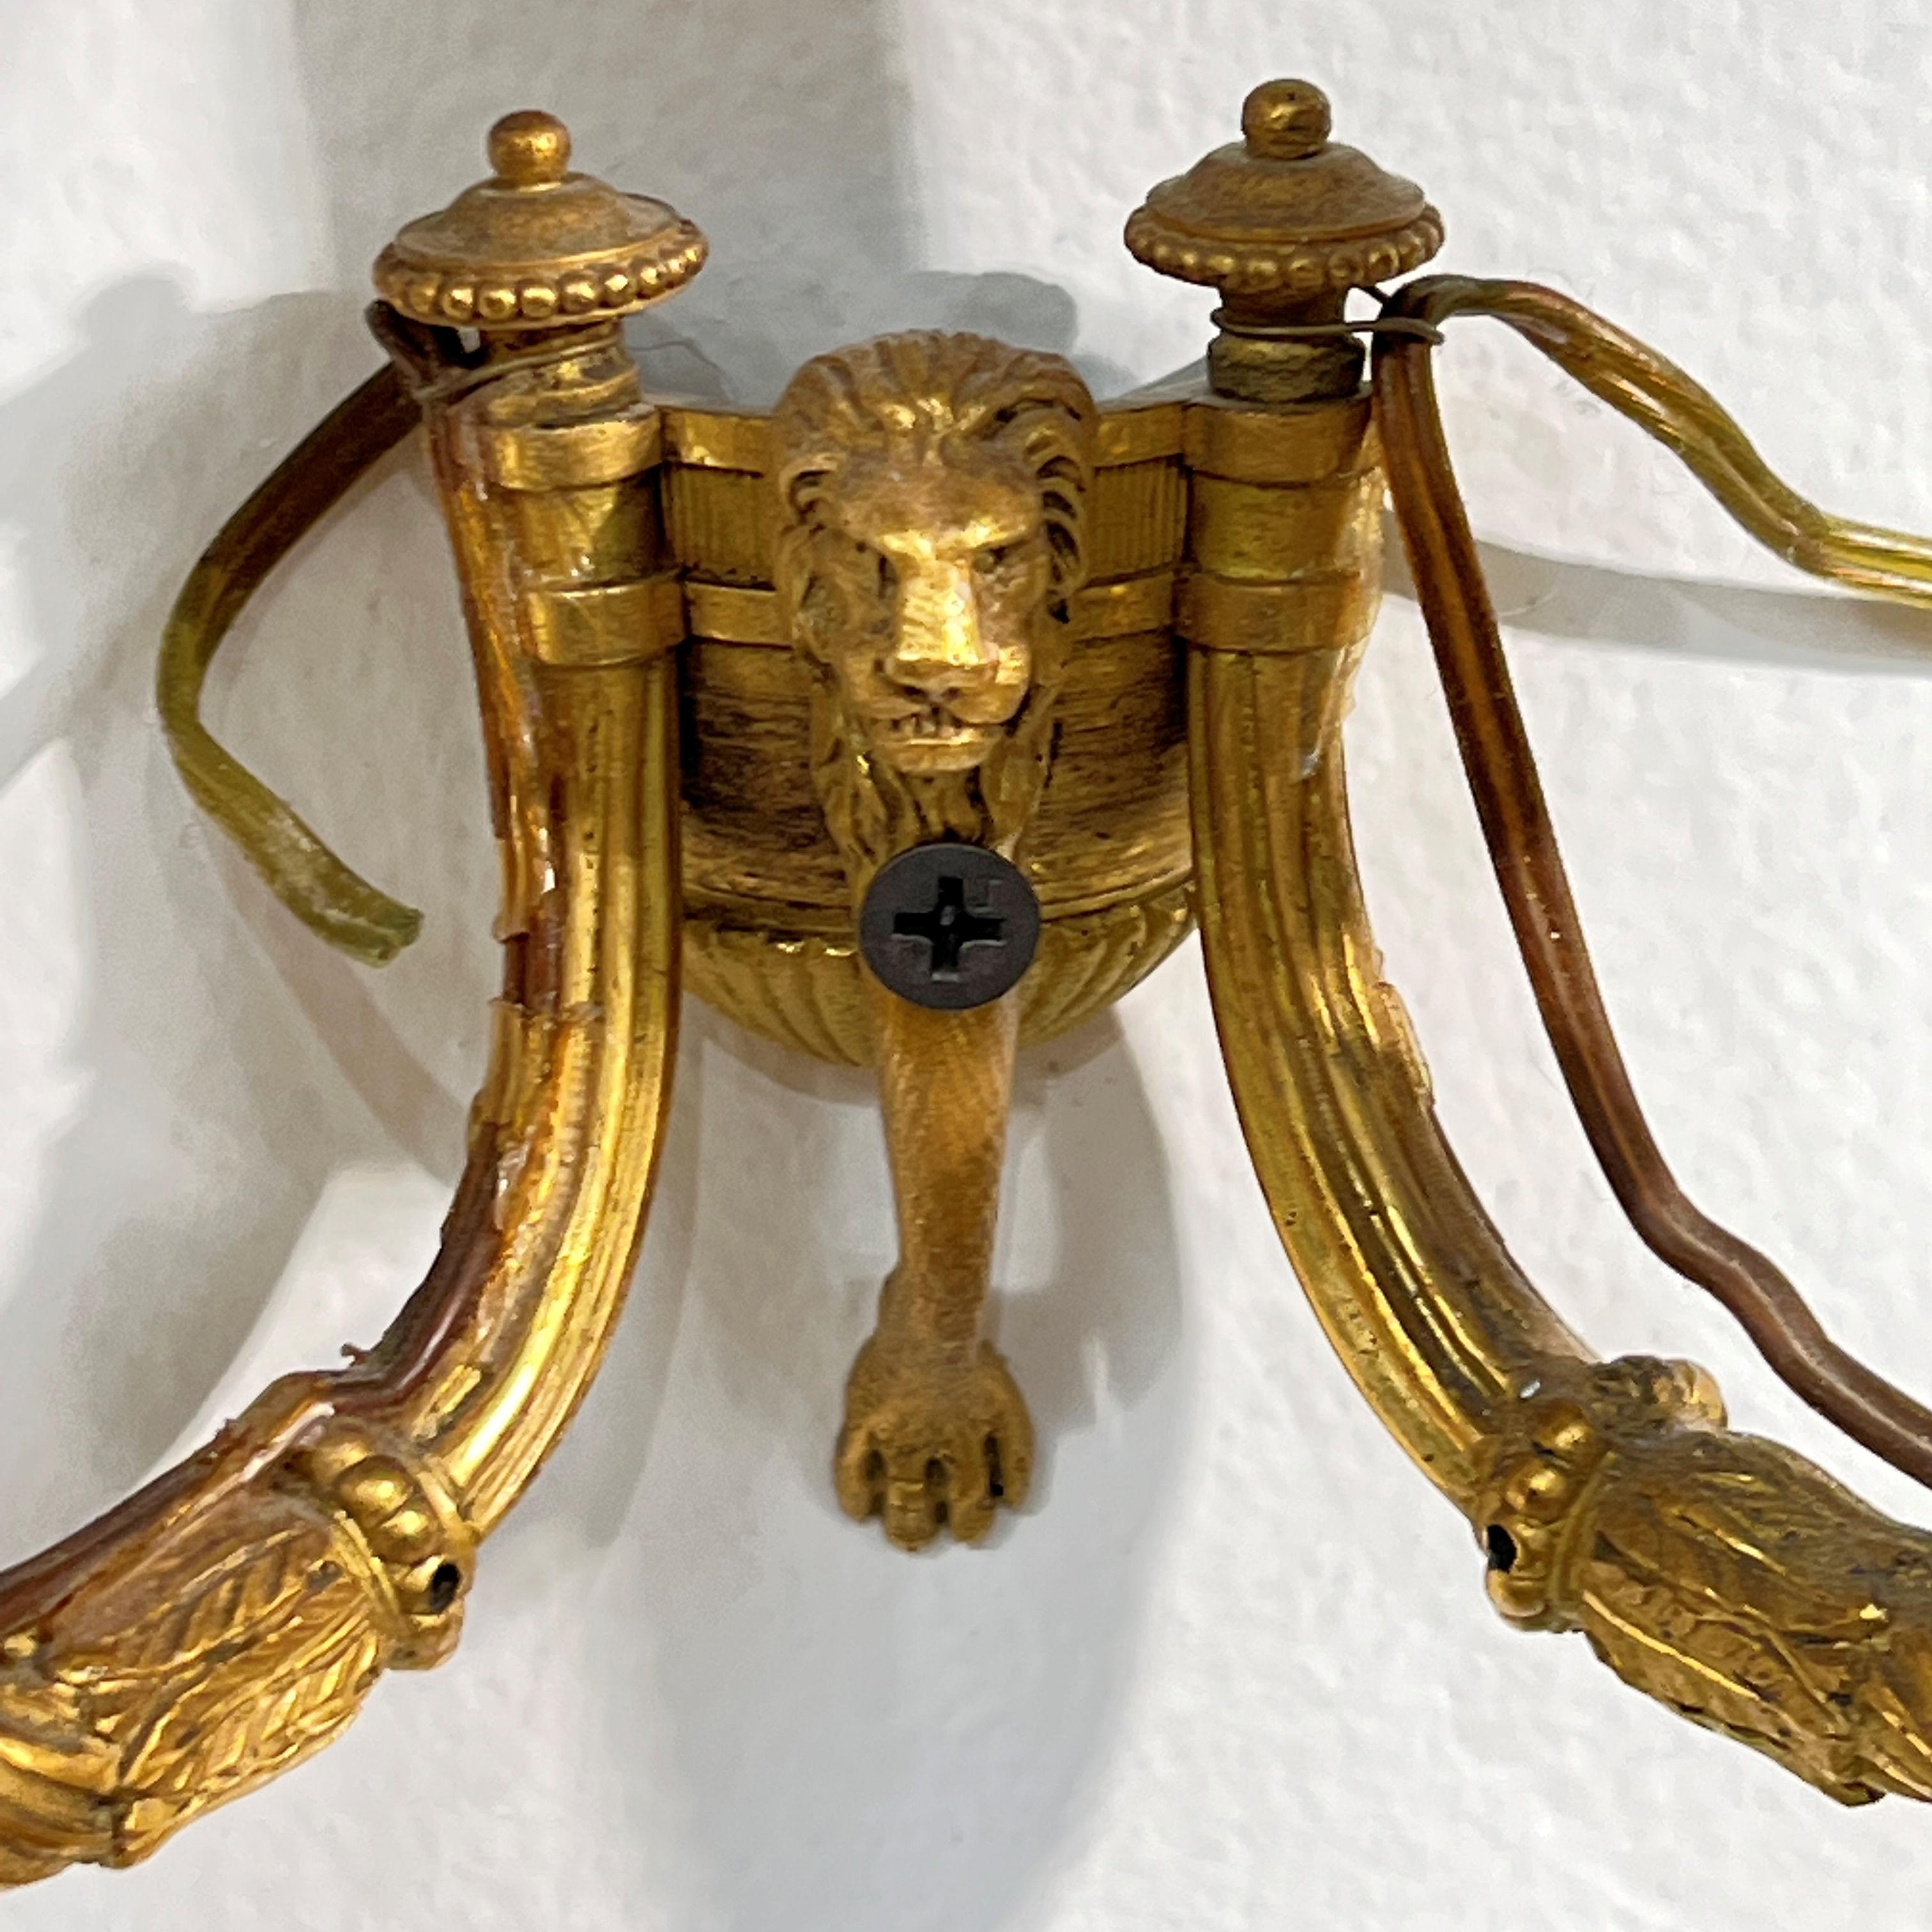 Notre paire d'appliques en bronze doré de la période géorgienne tardive date de la fin du XVIIIe siècle.  Elles comportent deux bras de bougie en forme de U, décorés de motifs de feuilles d'acanthe et de campanules, émanant de plaques murales ornées